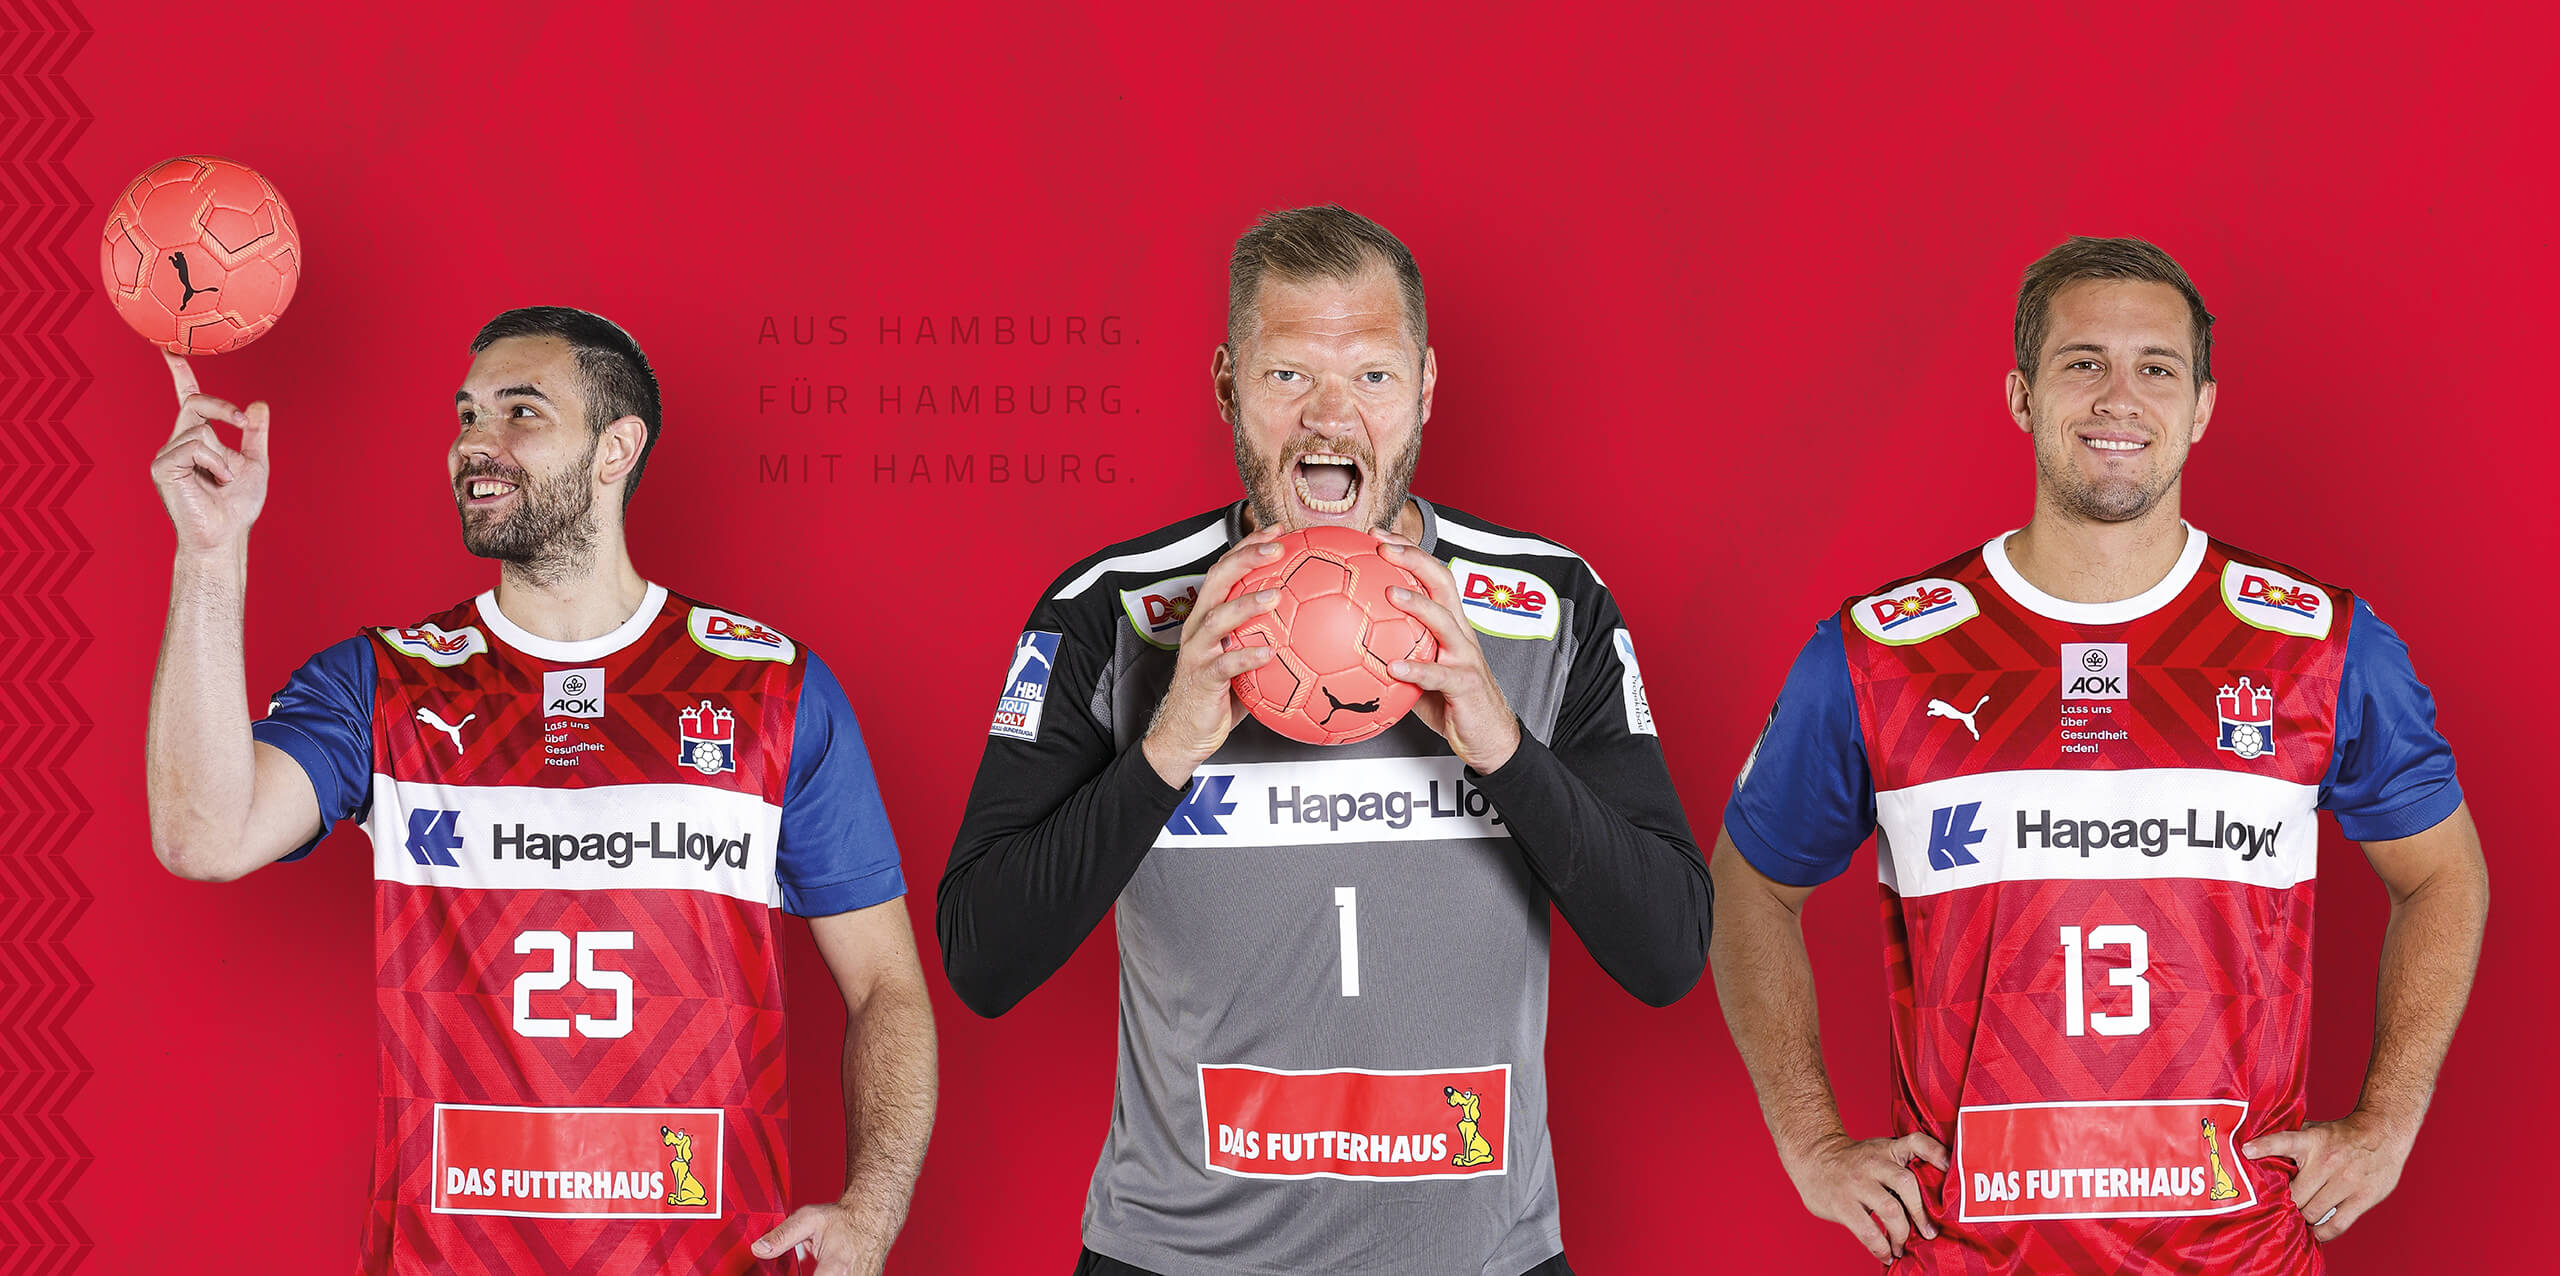 Handball Sport Verein Hamburg Offizielle Website hamburg-handball.de